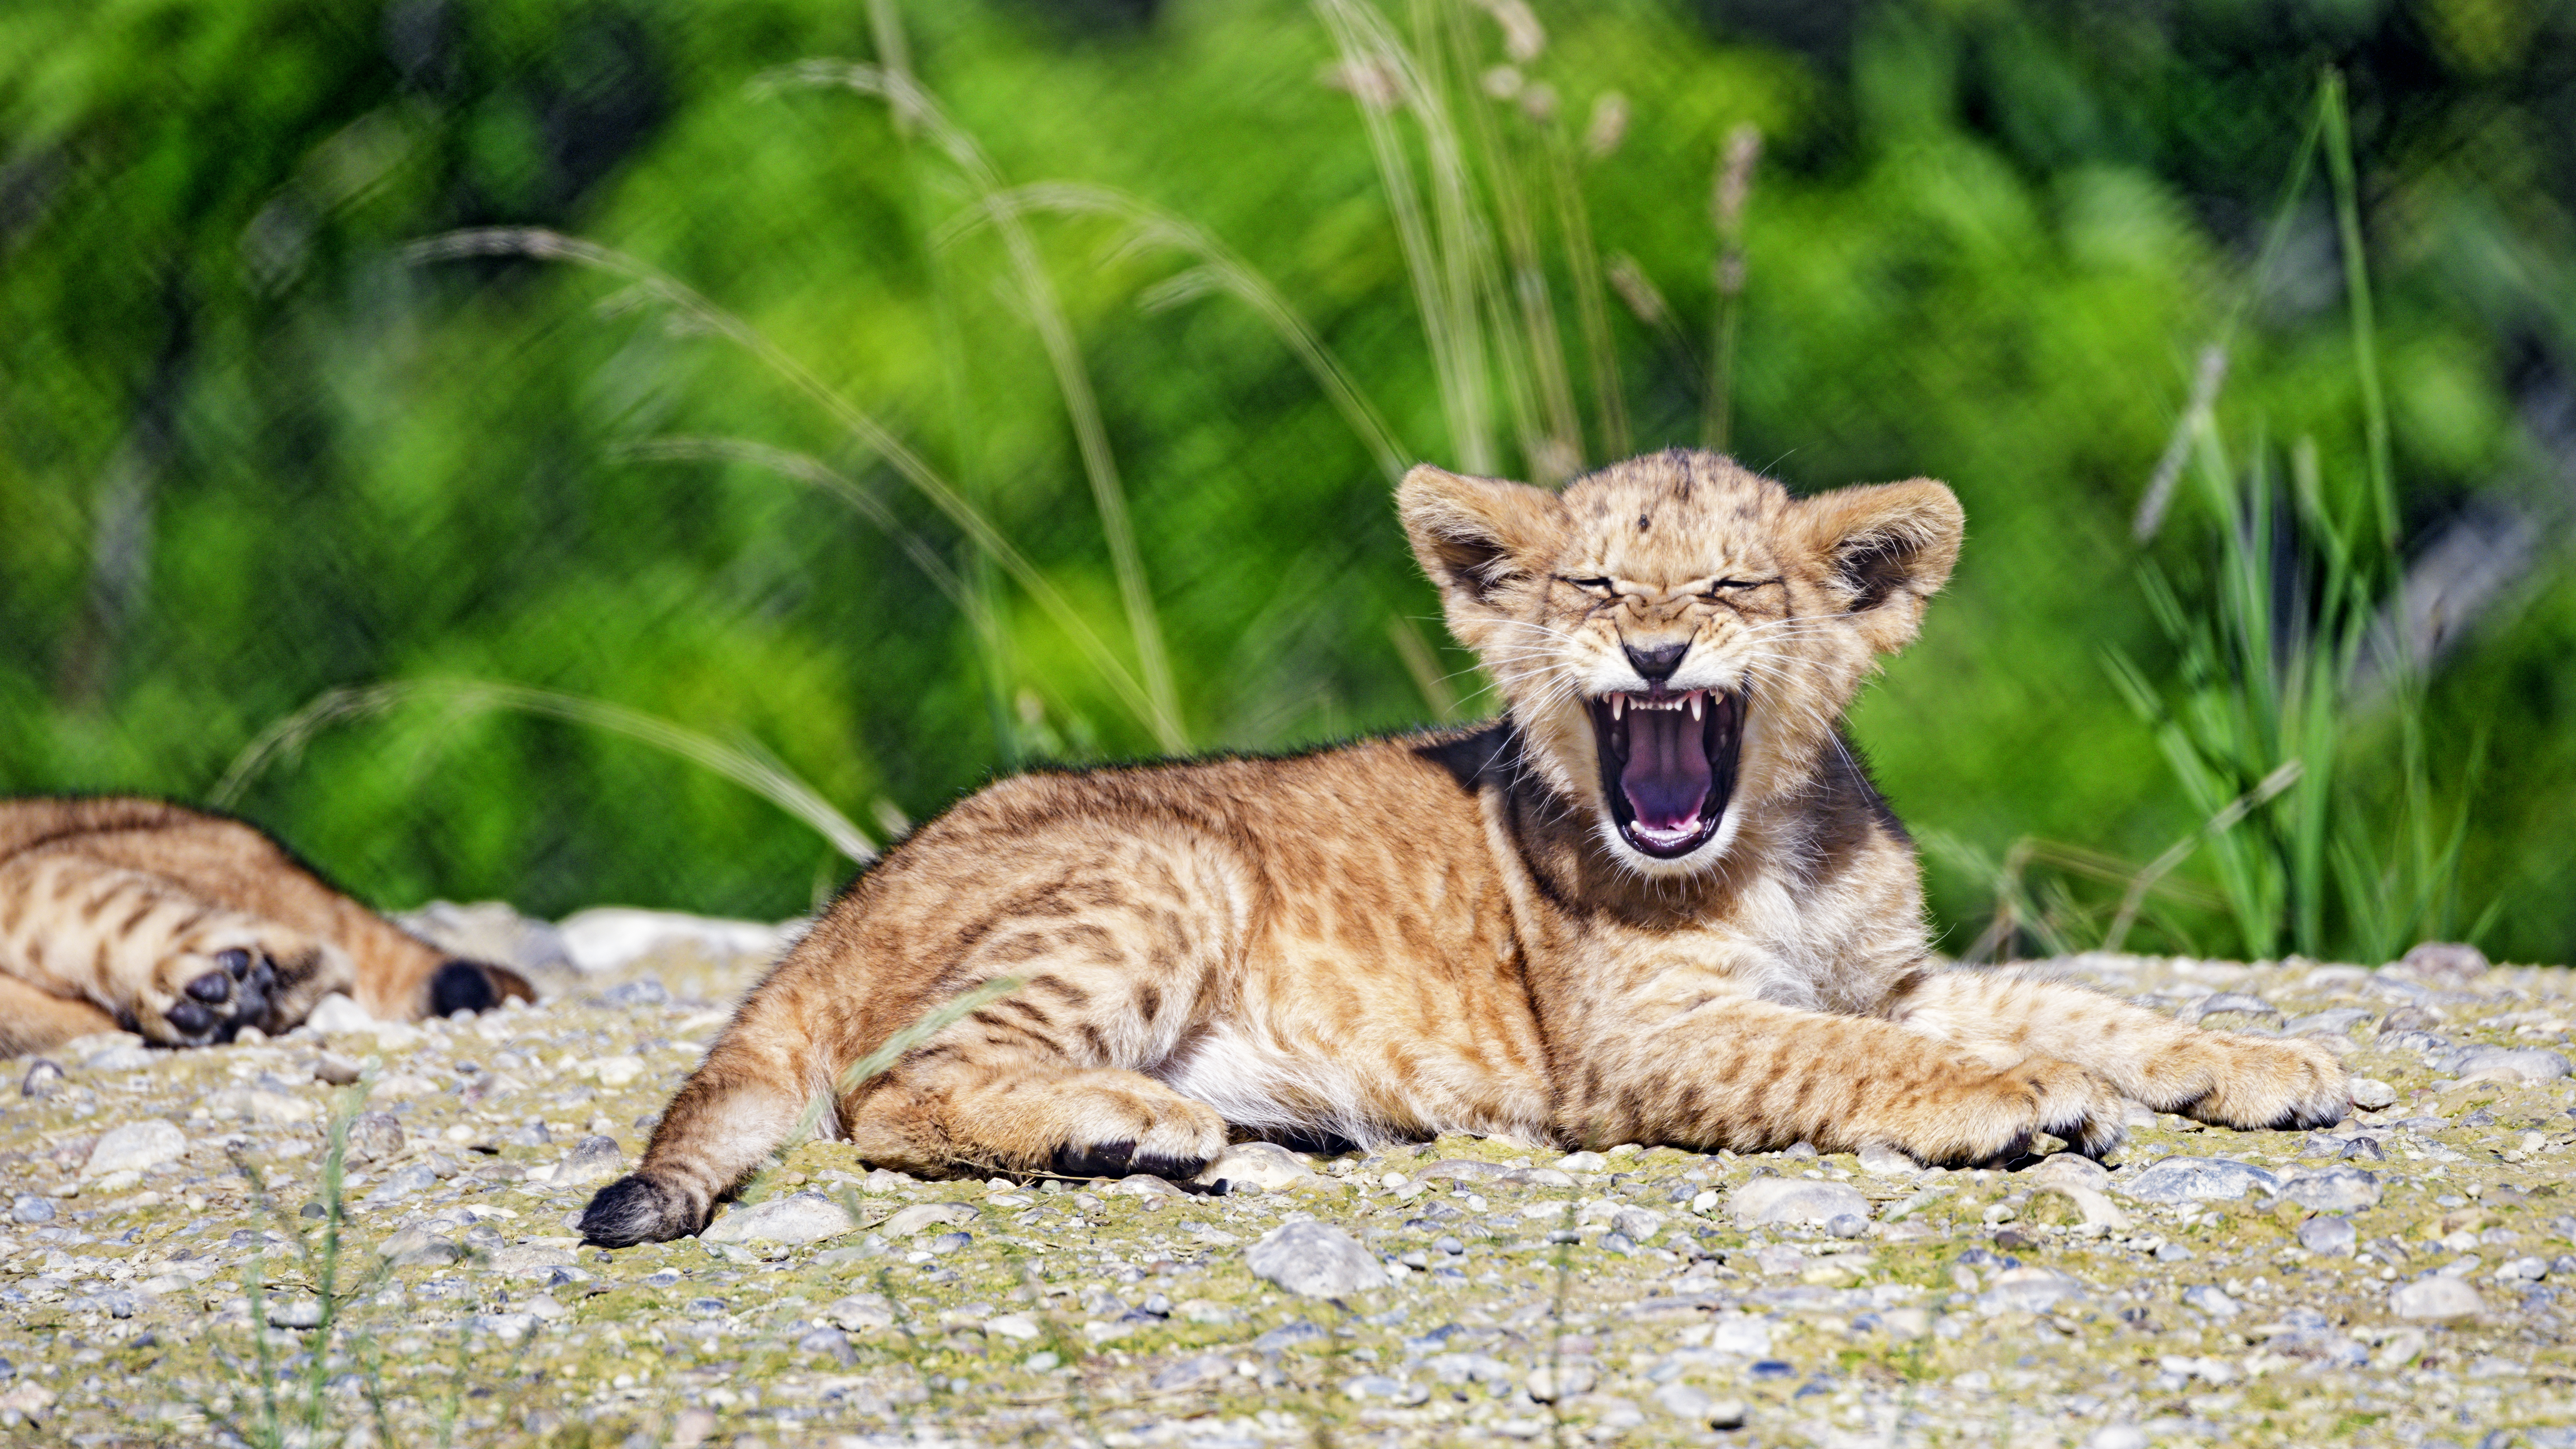 Best Mobile Lion Cub Backgrounds